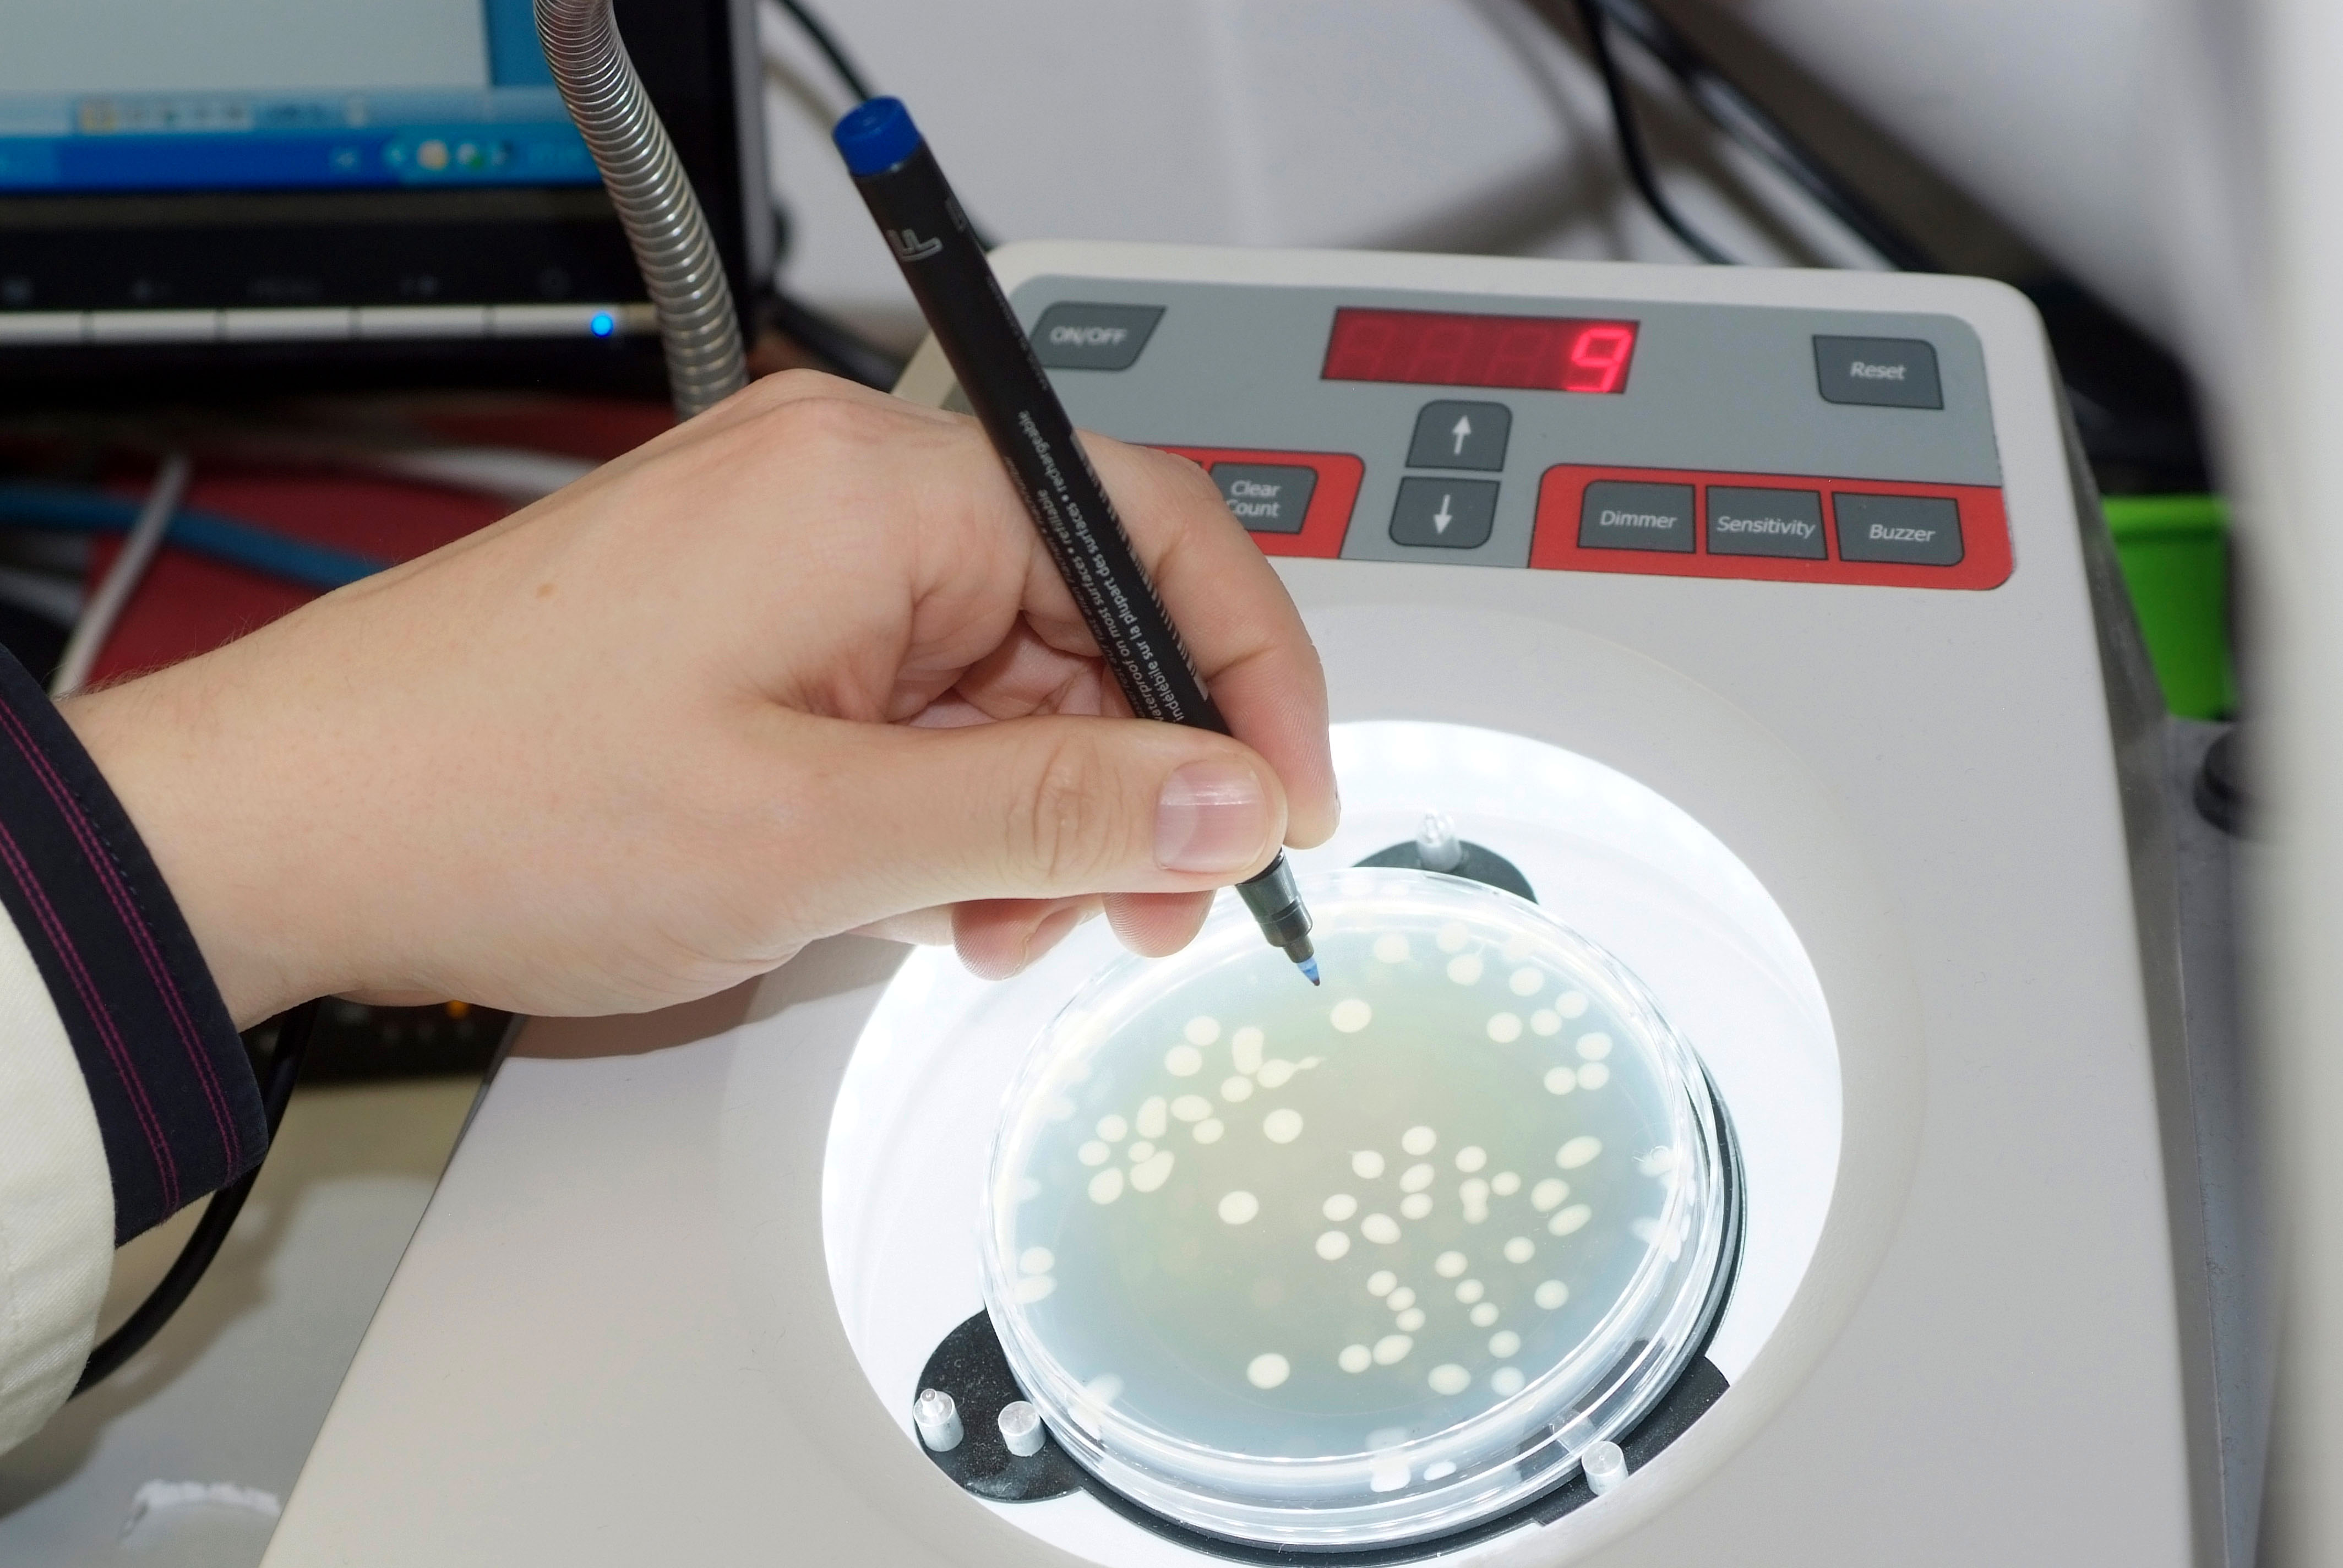 Zu sehen ist eine Petrischale mit Bakterienkulturen und eine Hand, die einen Stift hält. 